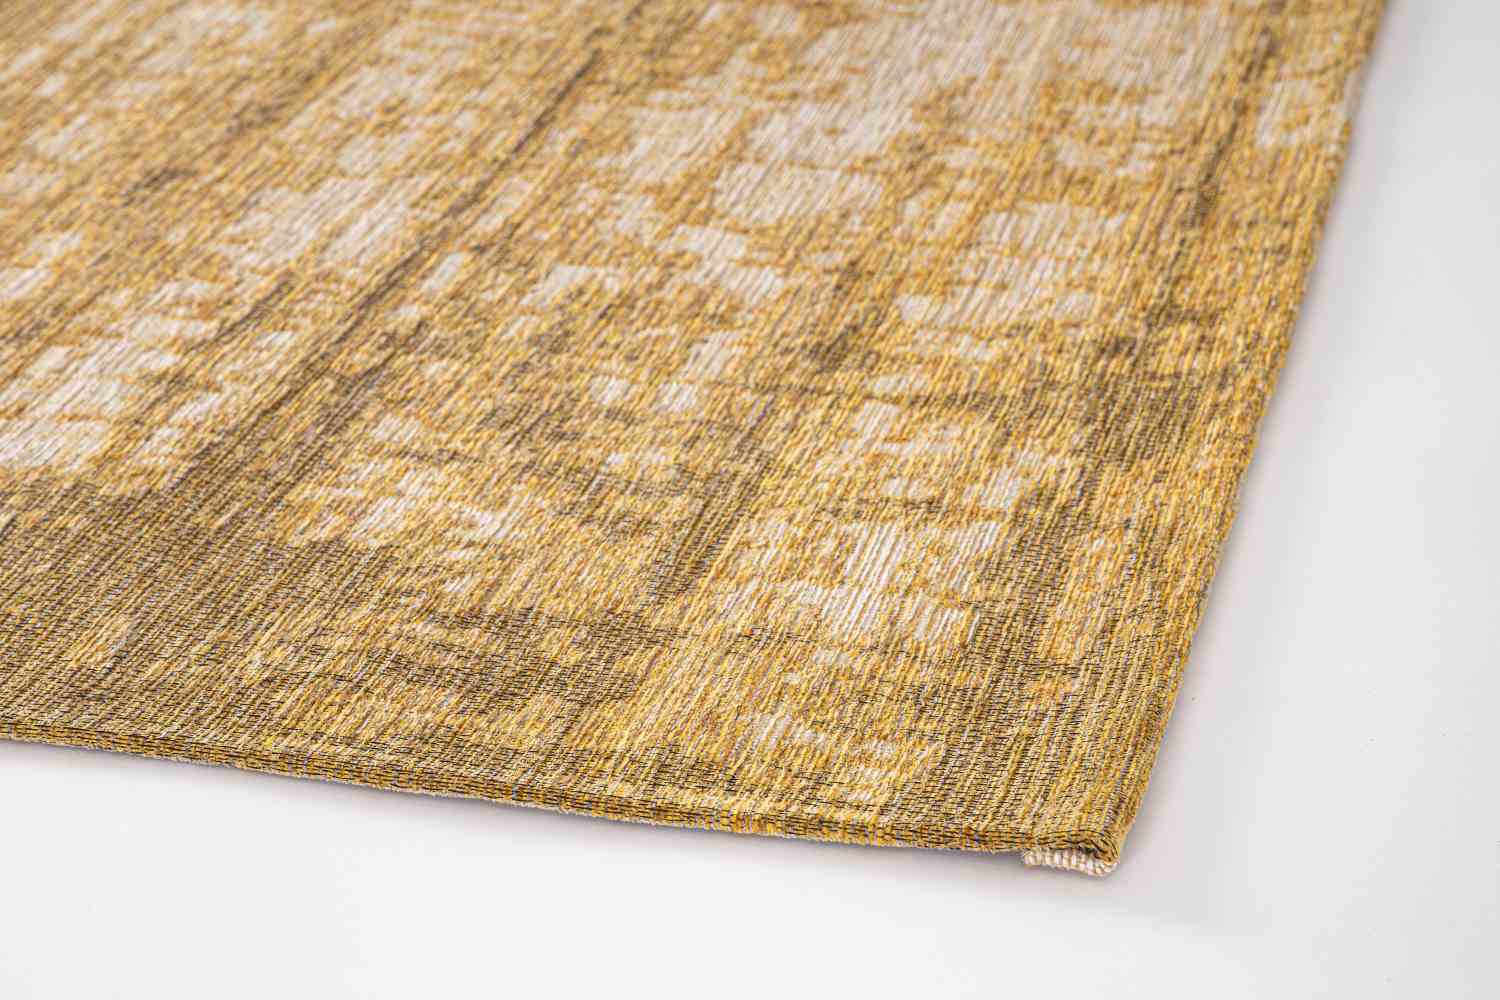 Der Teppich Yuno überzeugt mit seinem modernen Design. Gefertigt wurde die Vorderseite aus 50% Chenille, 30% Polyester und 20% Baumwolle, die Rückseite ist aus Latex. Der Teppich besitzt eine Senf Farbton und die Maße von 155x230 cm.